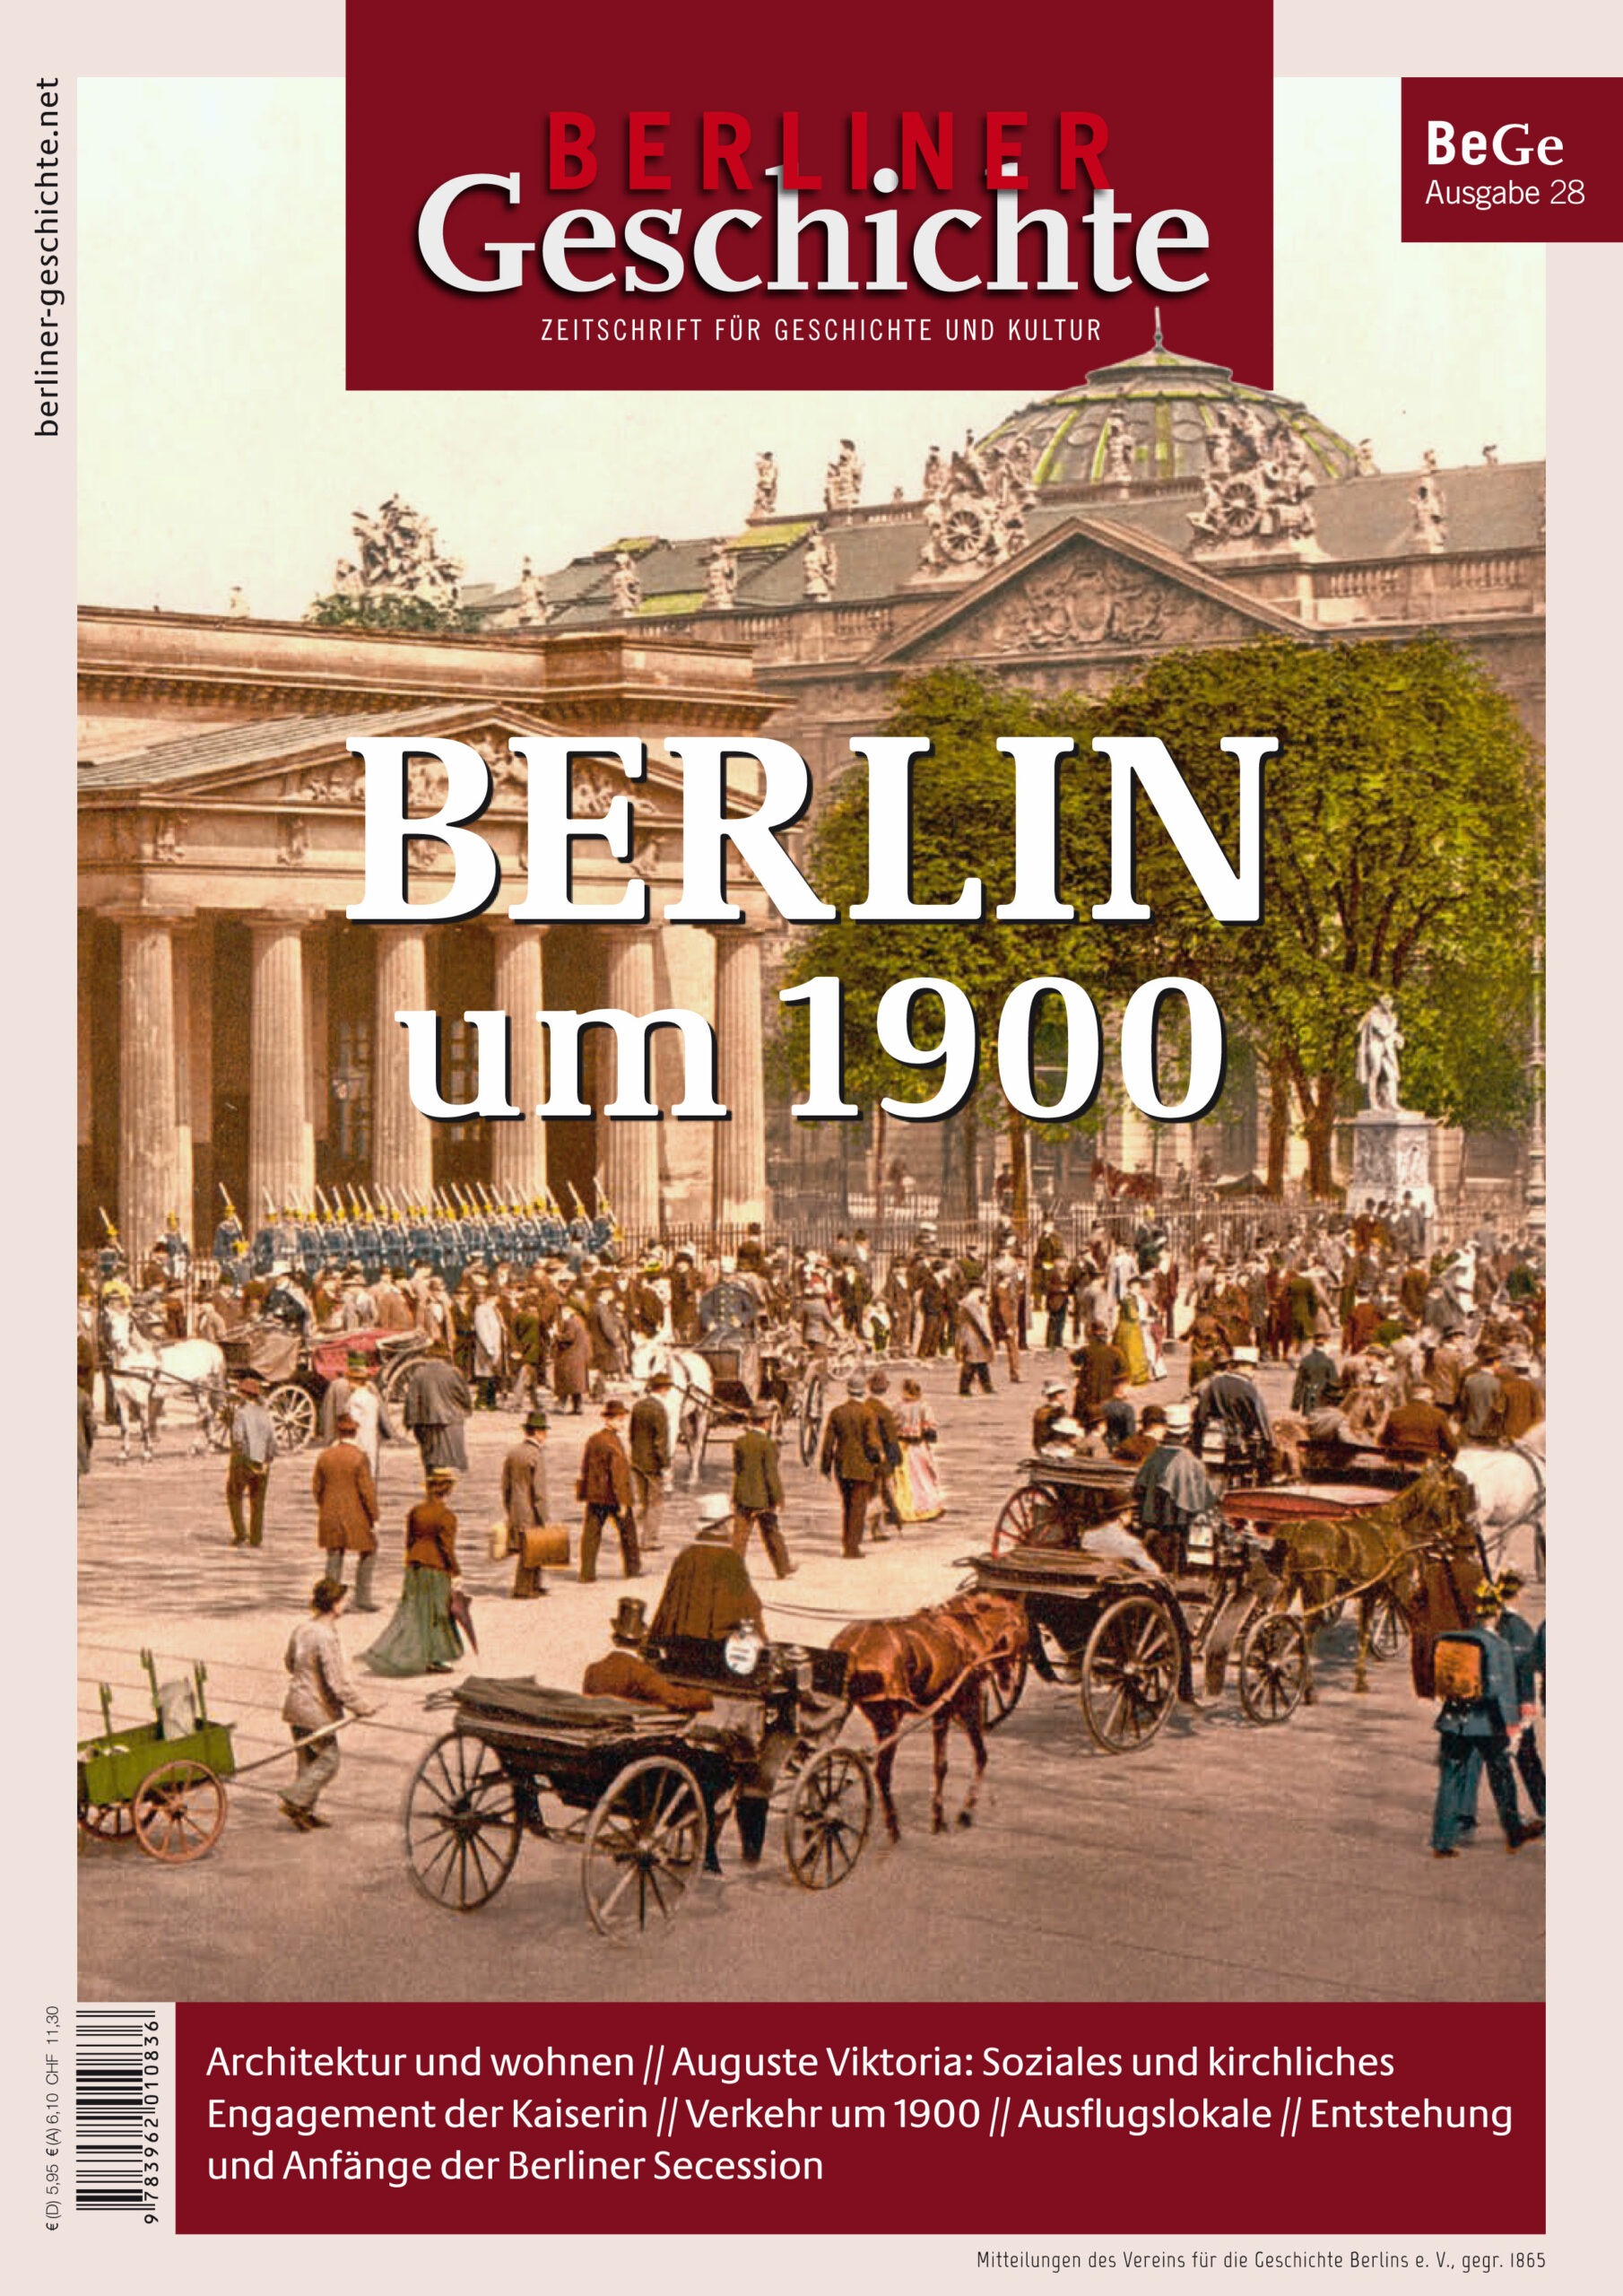 Bild zeigt Cover der Ausgabe Berlin um 1900.